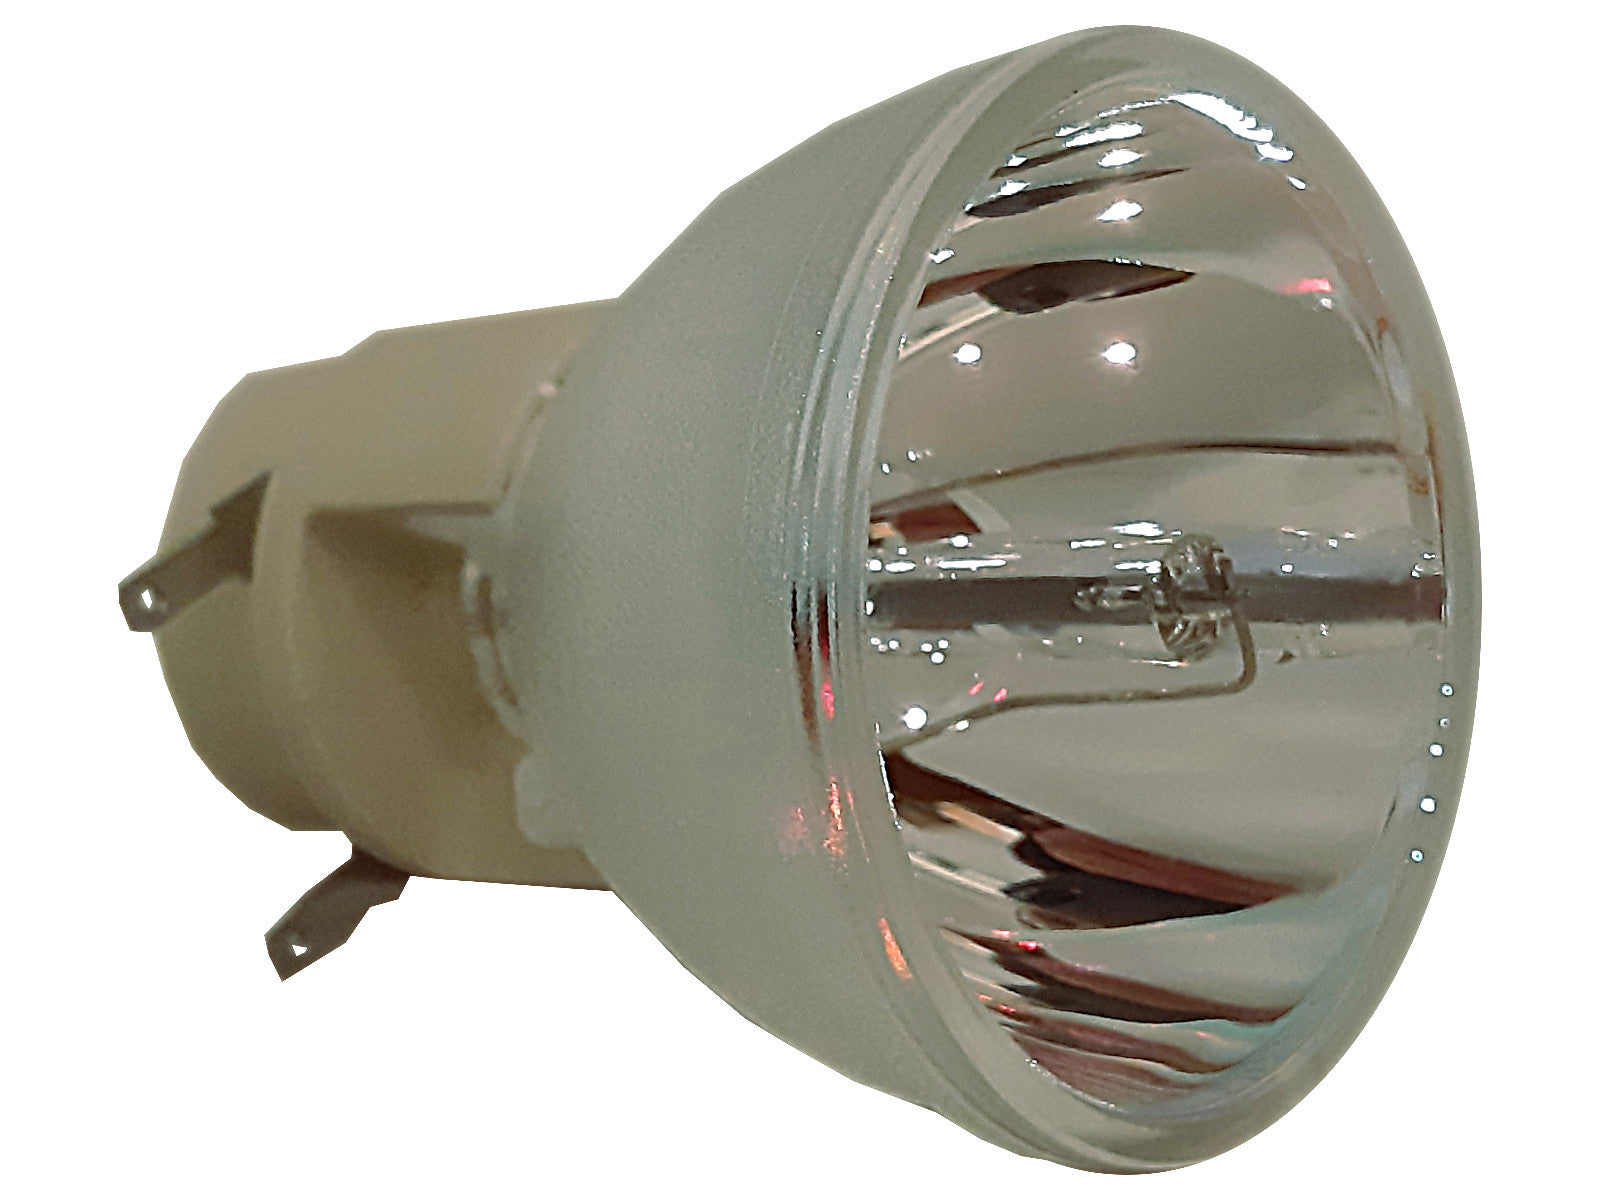 OSRAM Ersatzlampe P-VIP 195/0.8 E20.7 | Beamerlampe für diverse Projektoren - Bild 1